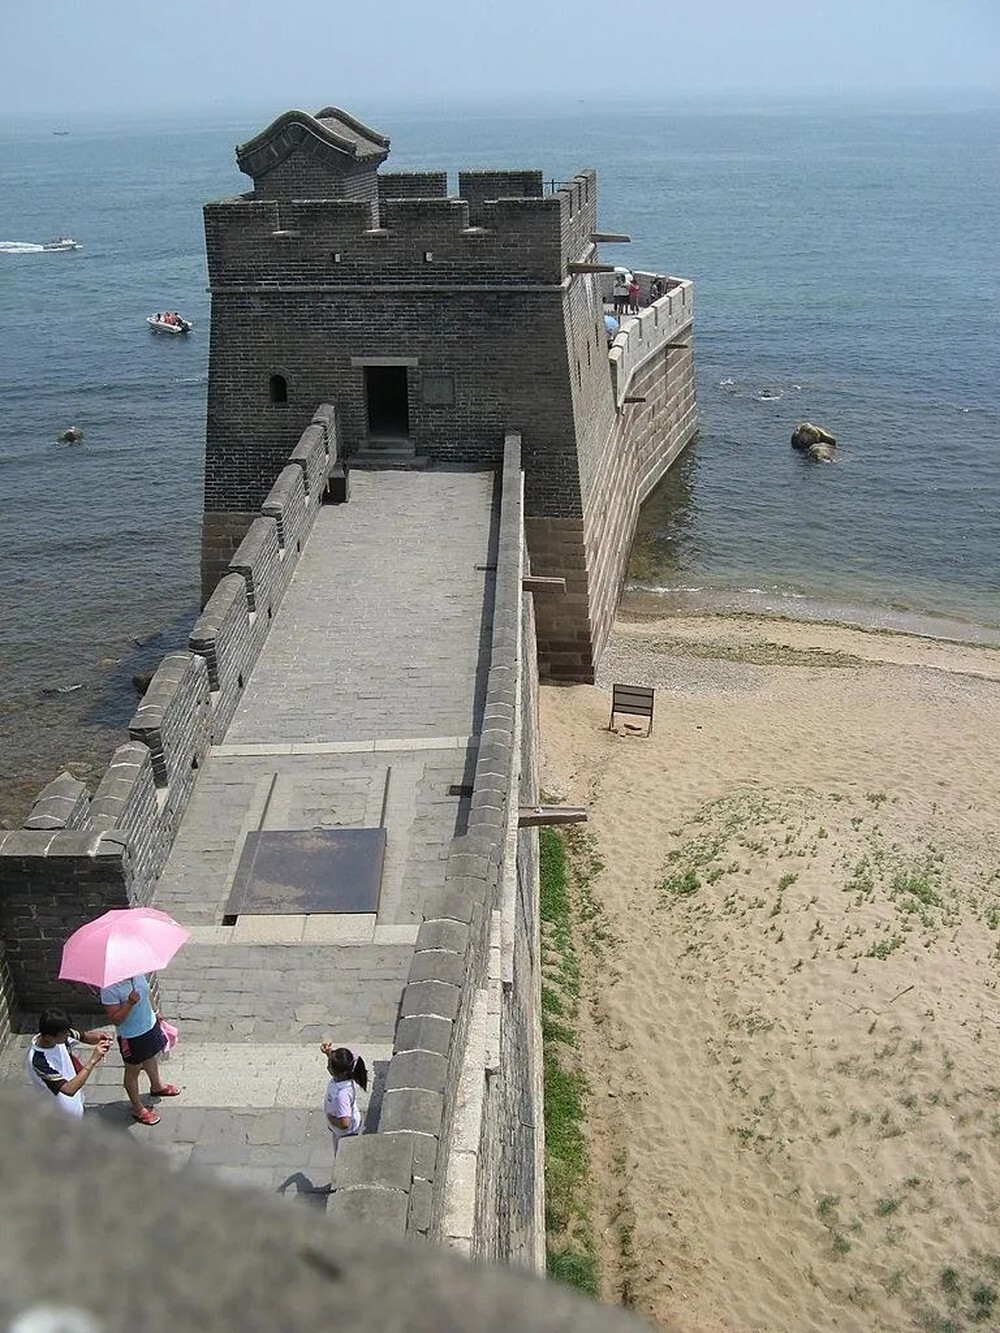 6. Вот так выглядит конец восточной части Великой Китайской стены